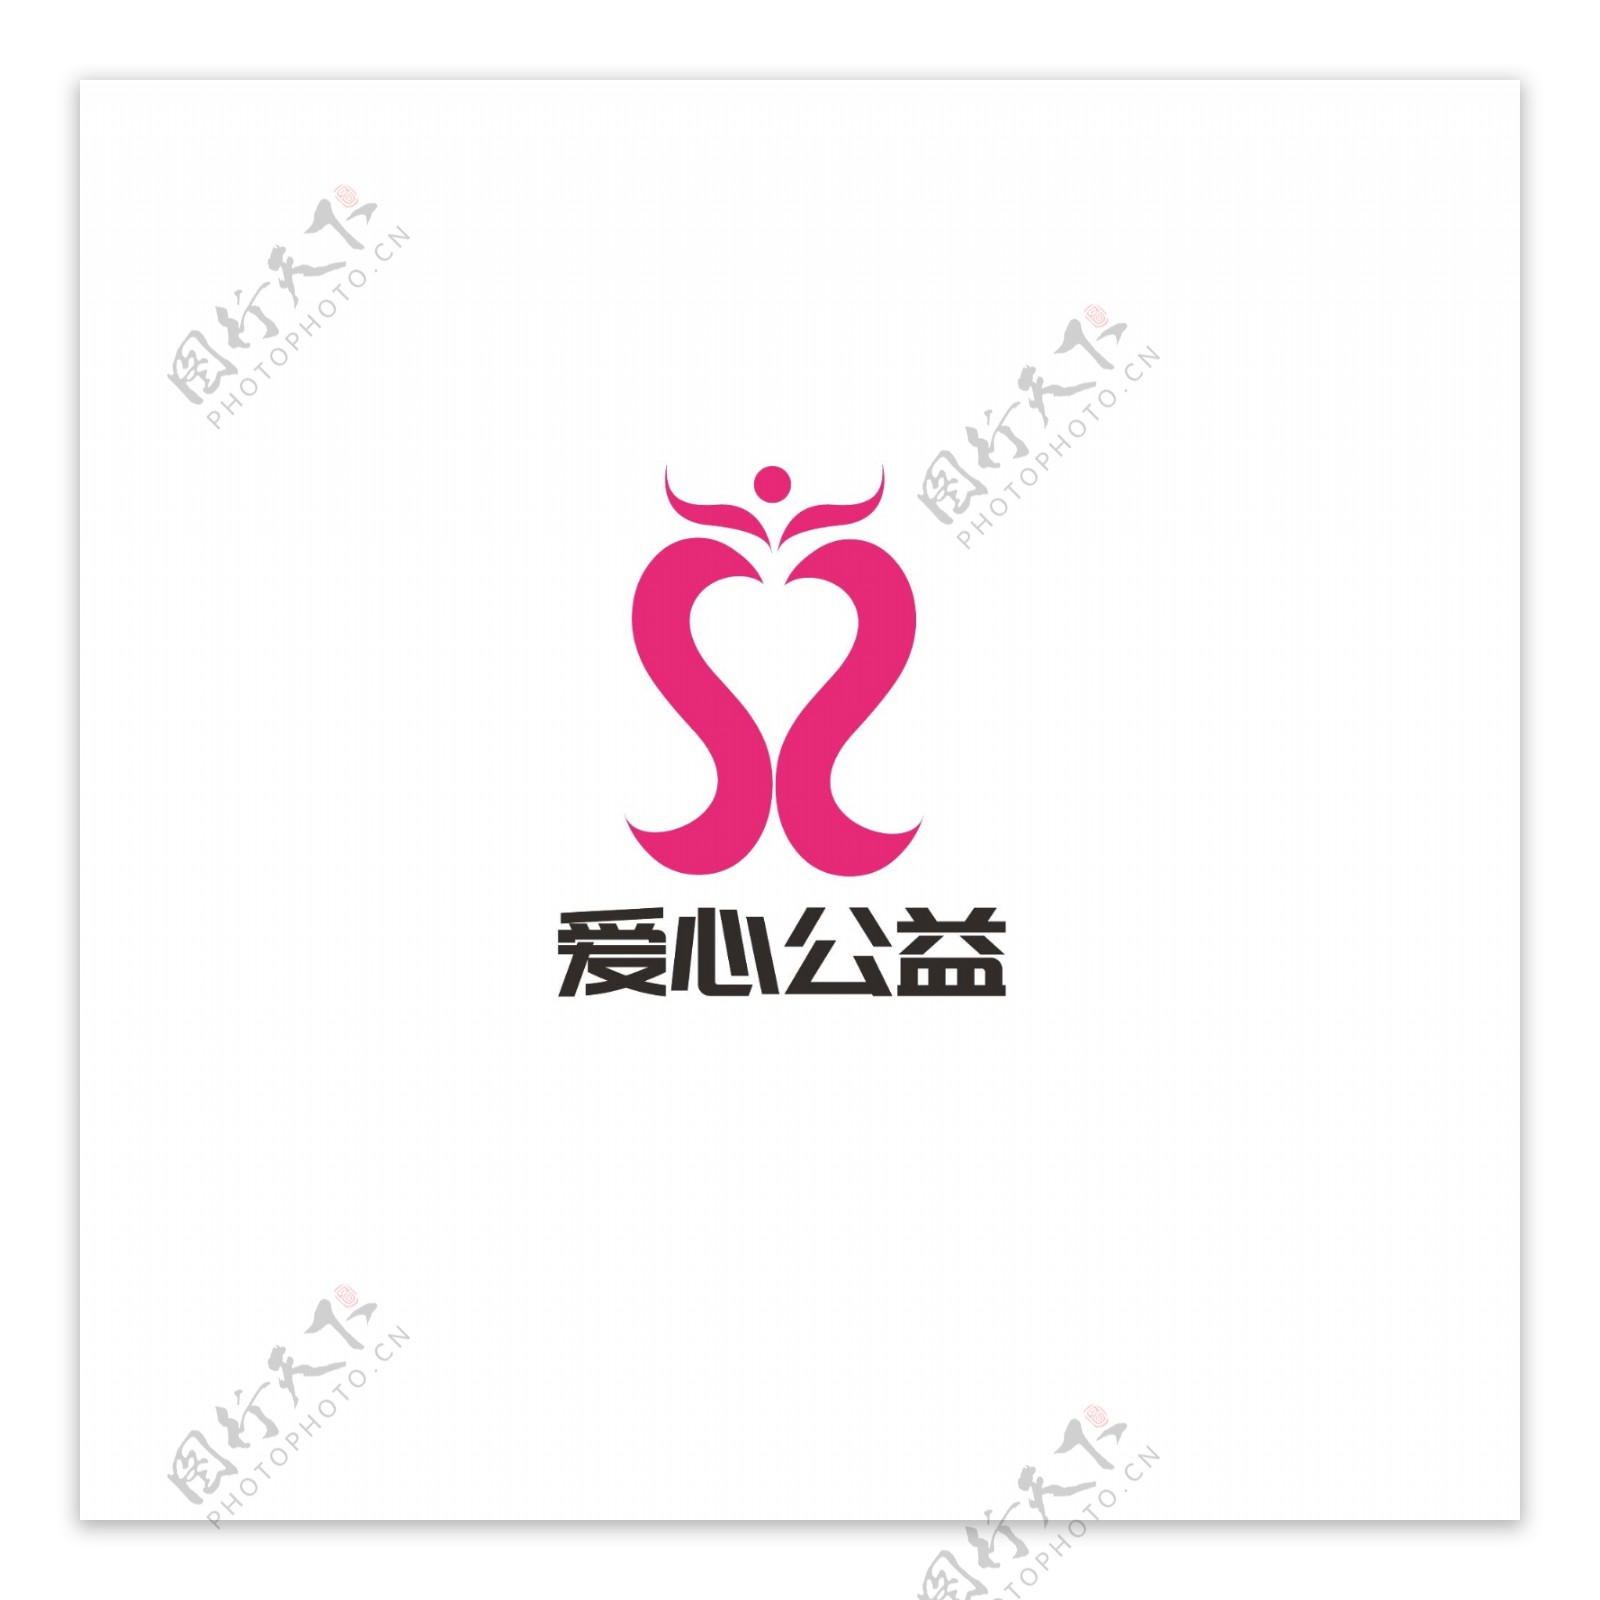 爱心公益logo设计